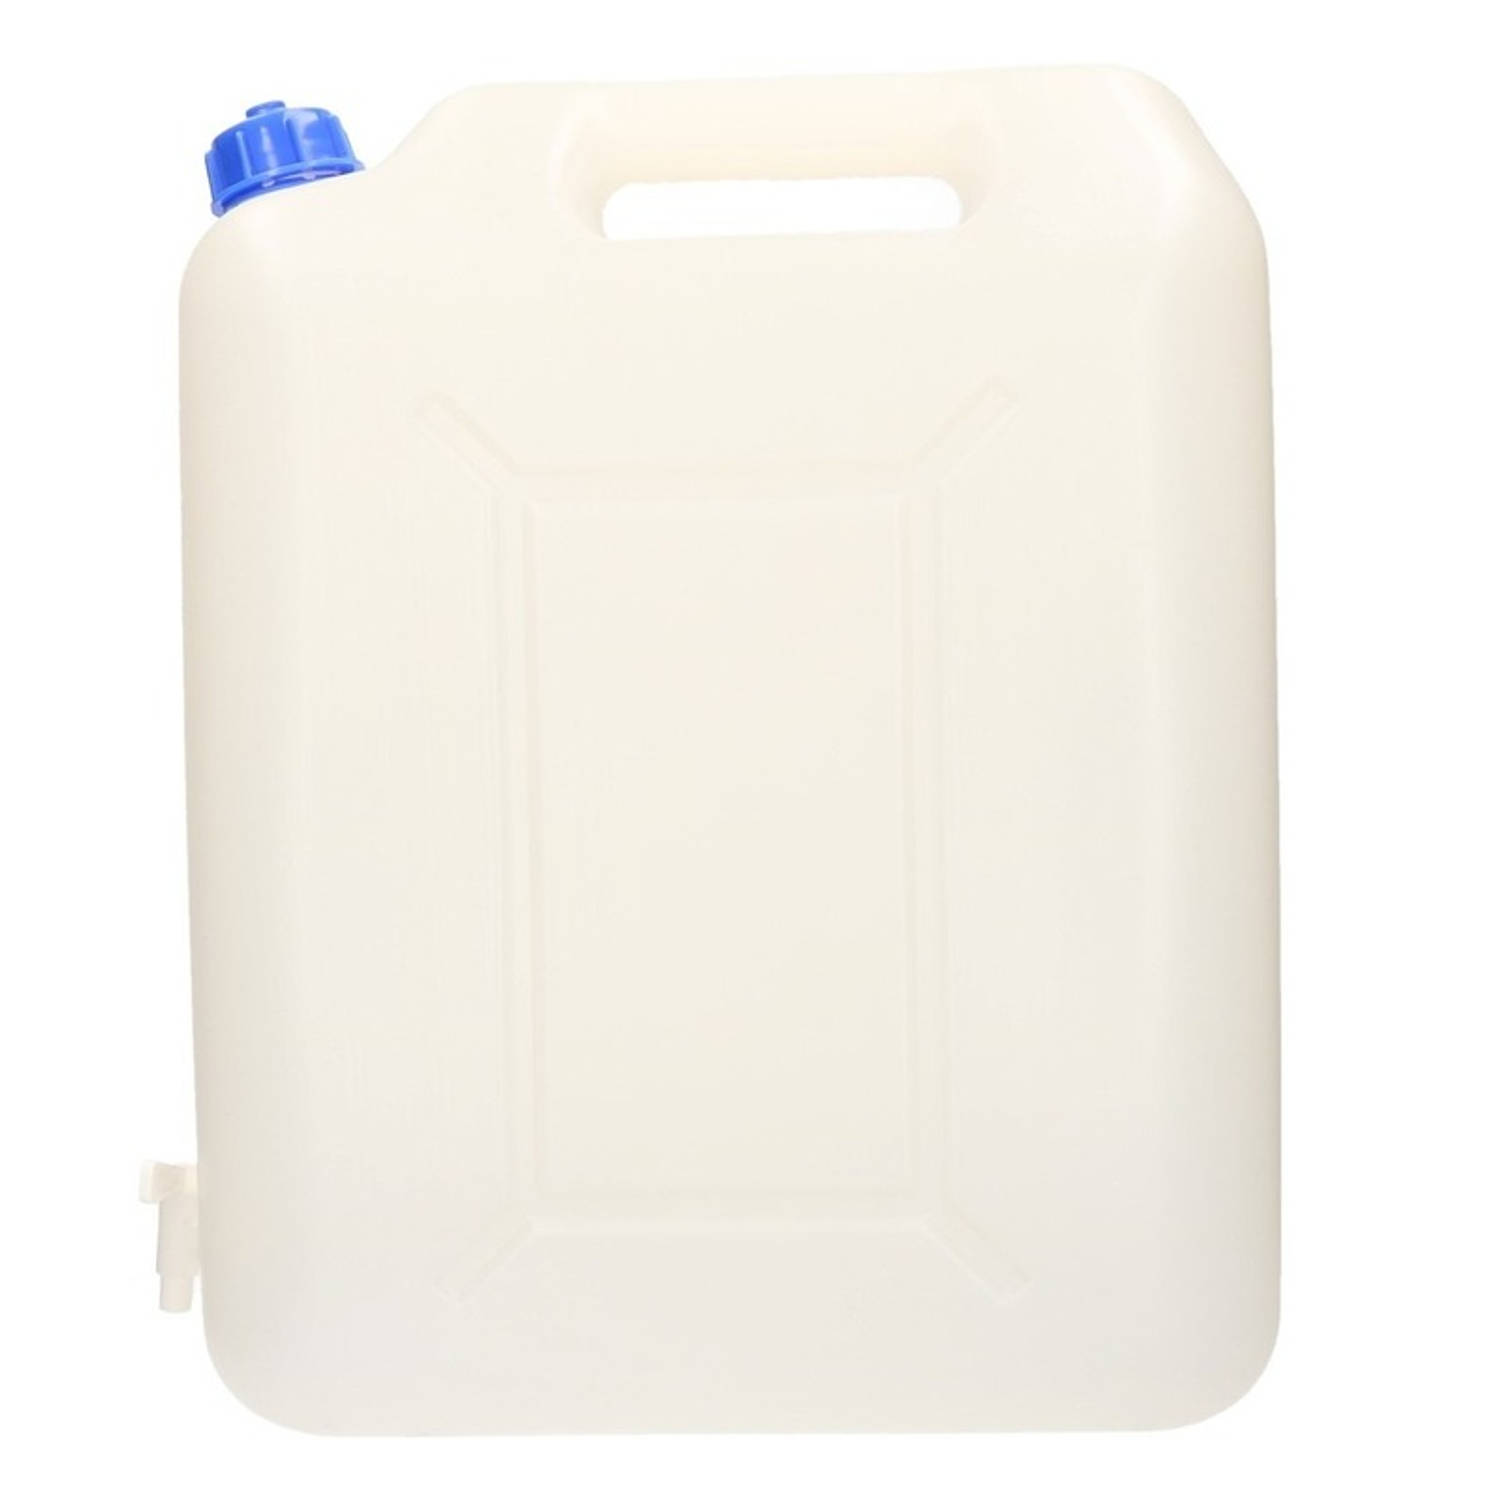 Water jerrycans / watertank 20 liter - Jerrycan voor water